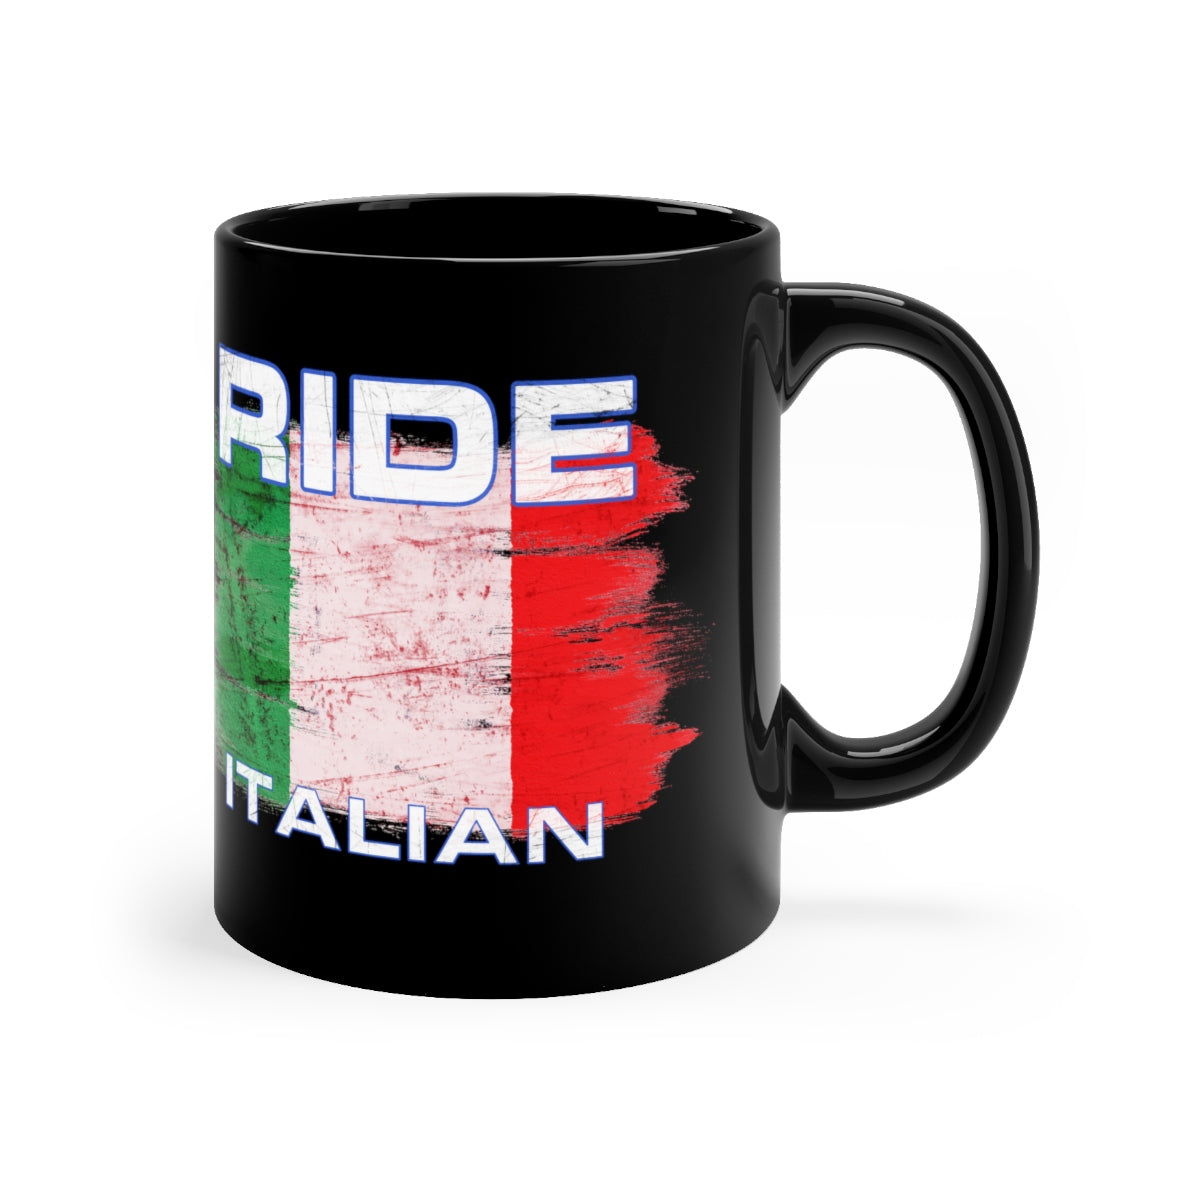 Ride Italian - Black mug 11oz